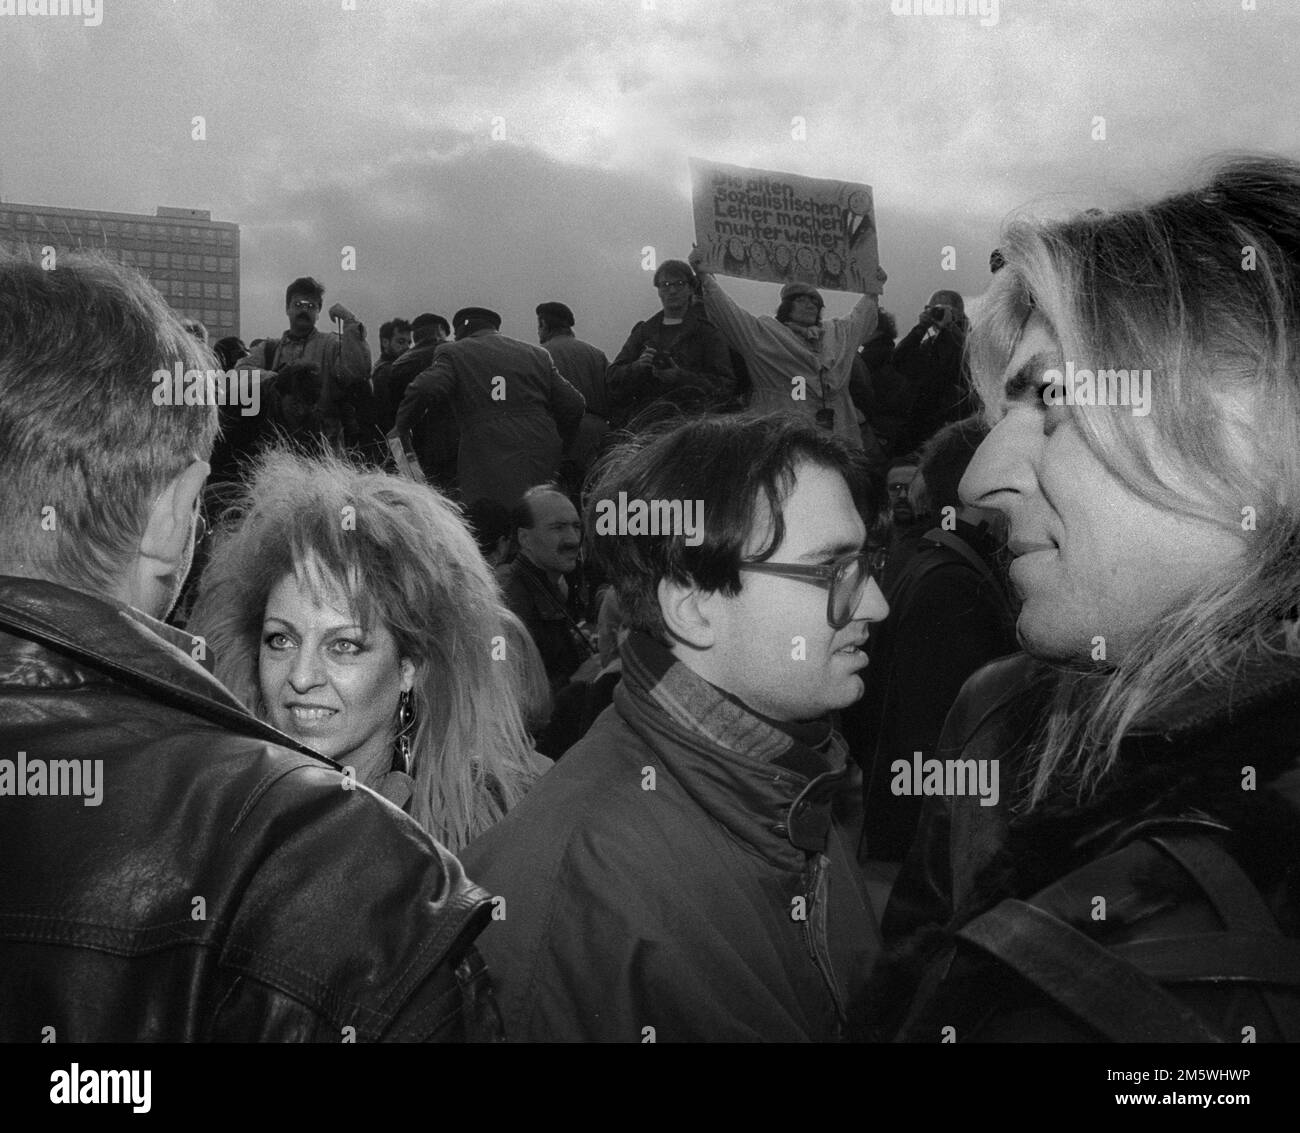 Tamara Danz, à droite : Uwe Hassbecker, Allemagne, Berlin, 04. 11. 1990 (mémoire) Démo le 4 novembre (89), à Alexanderplatz, Mitte Banque D'Images